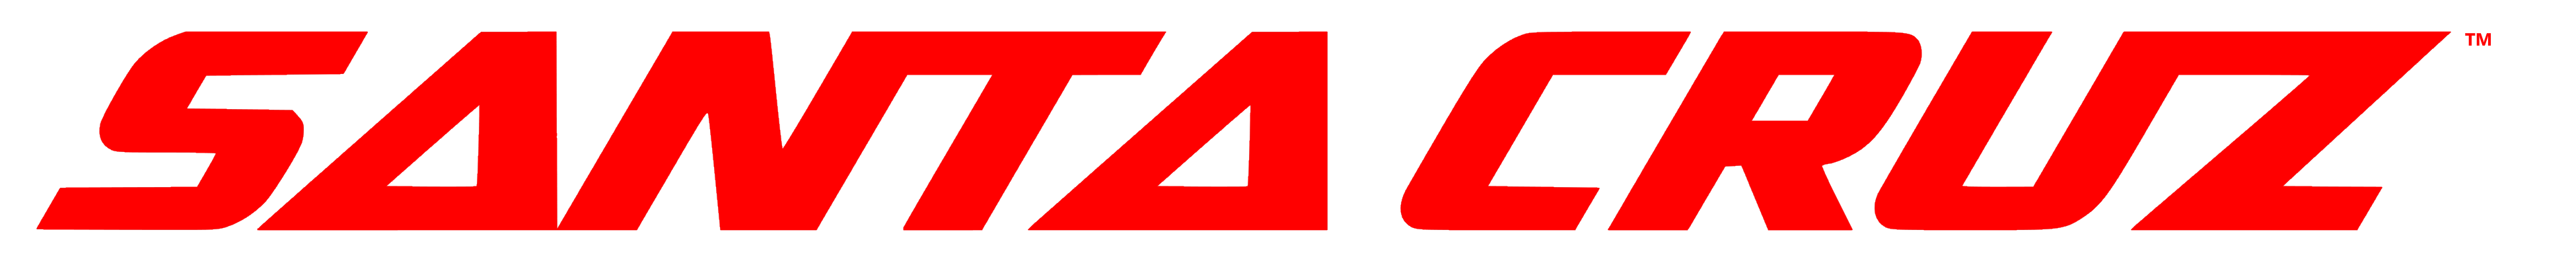 Santa Cruz Bicycles logo, logotype